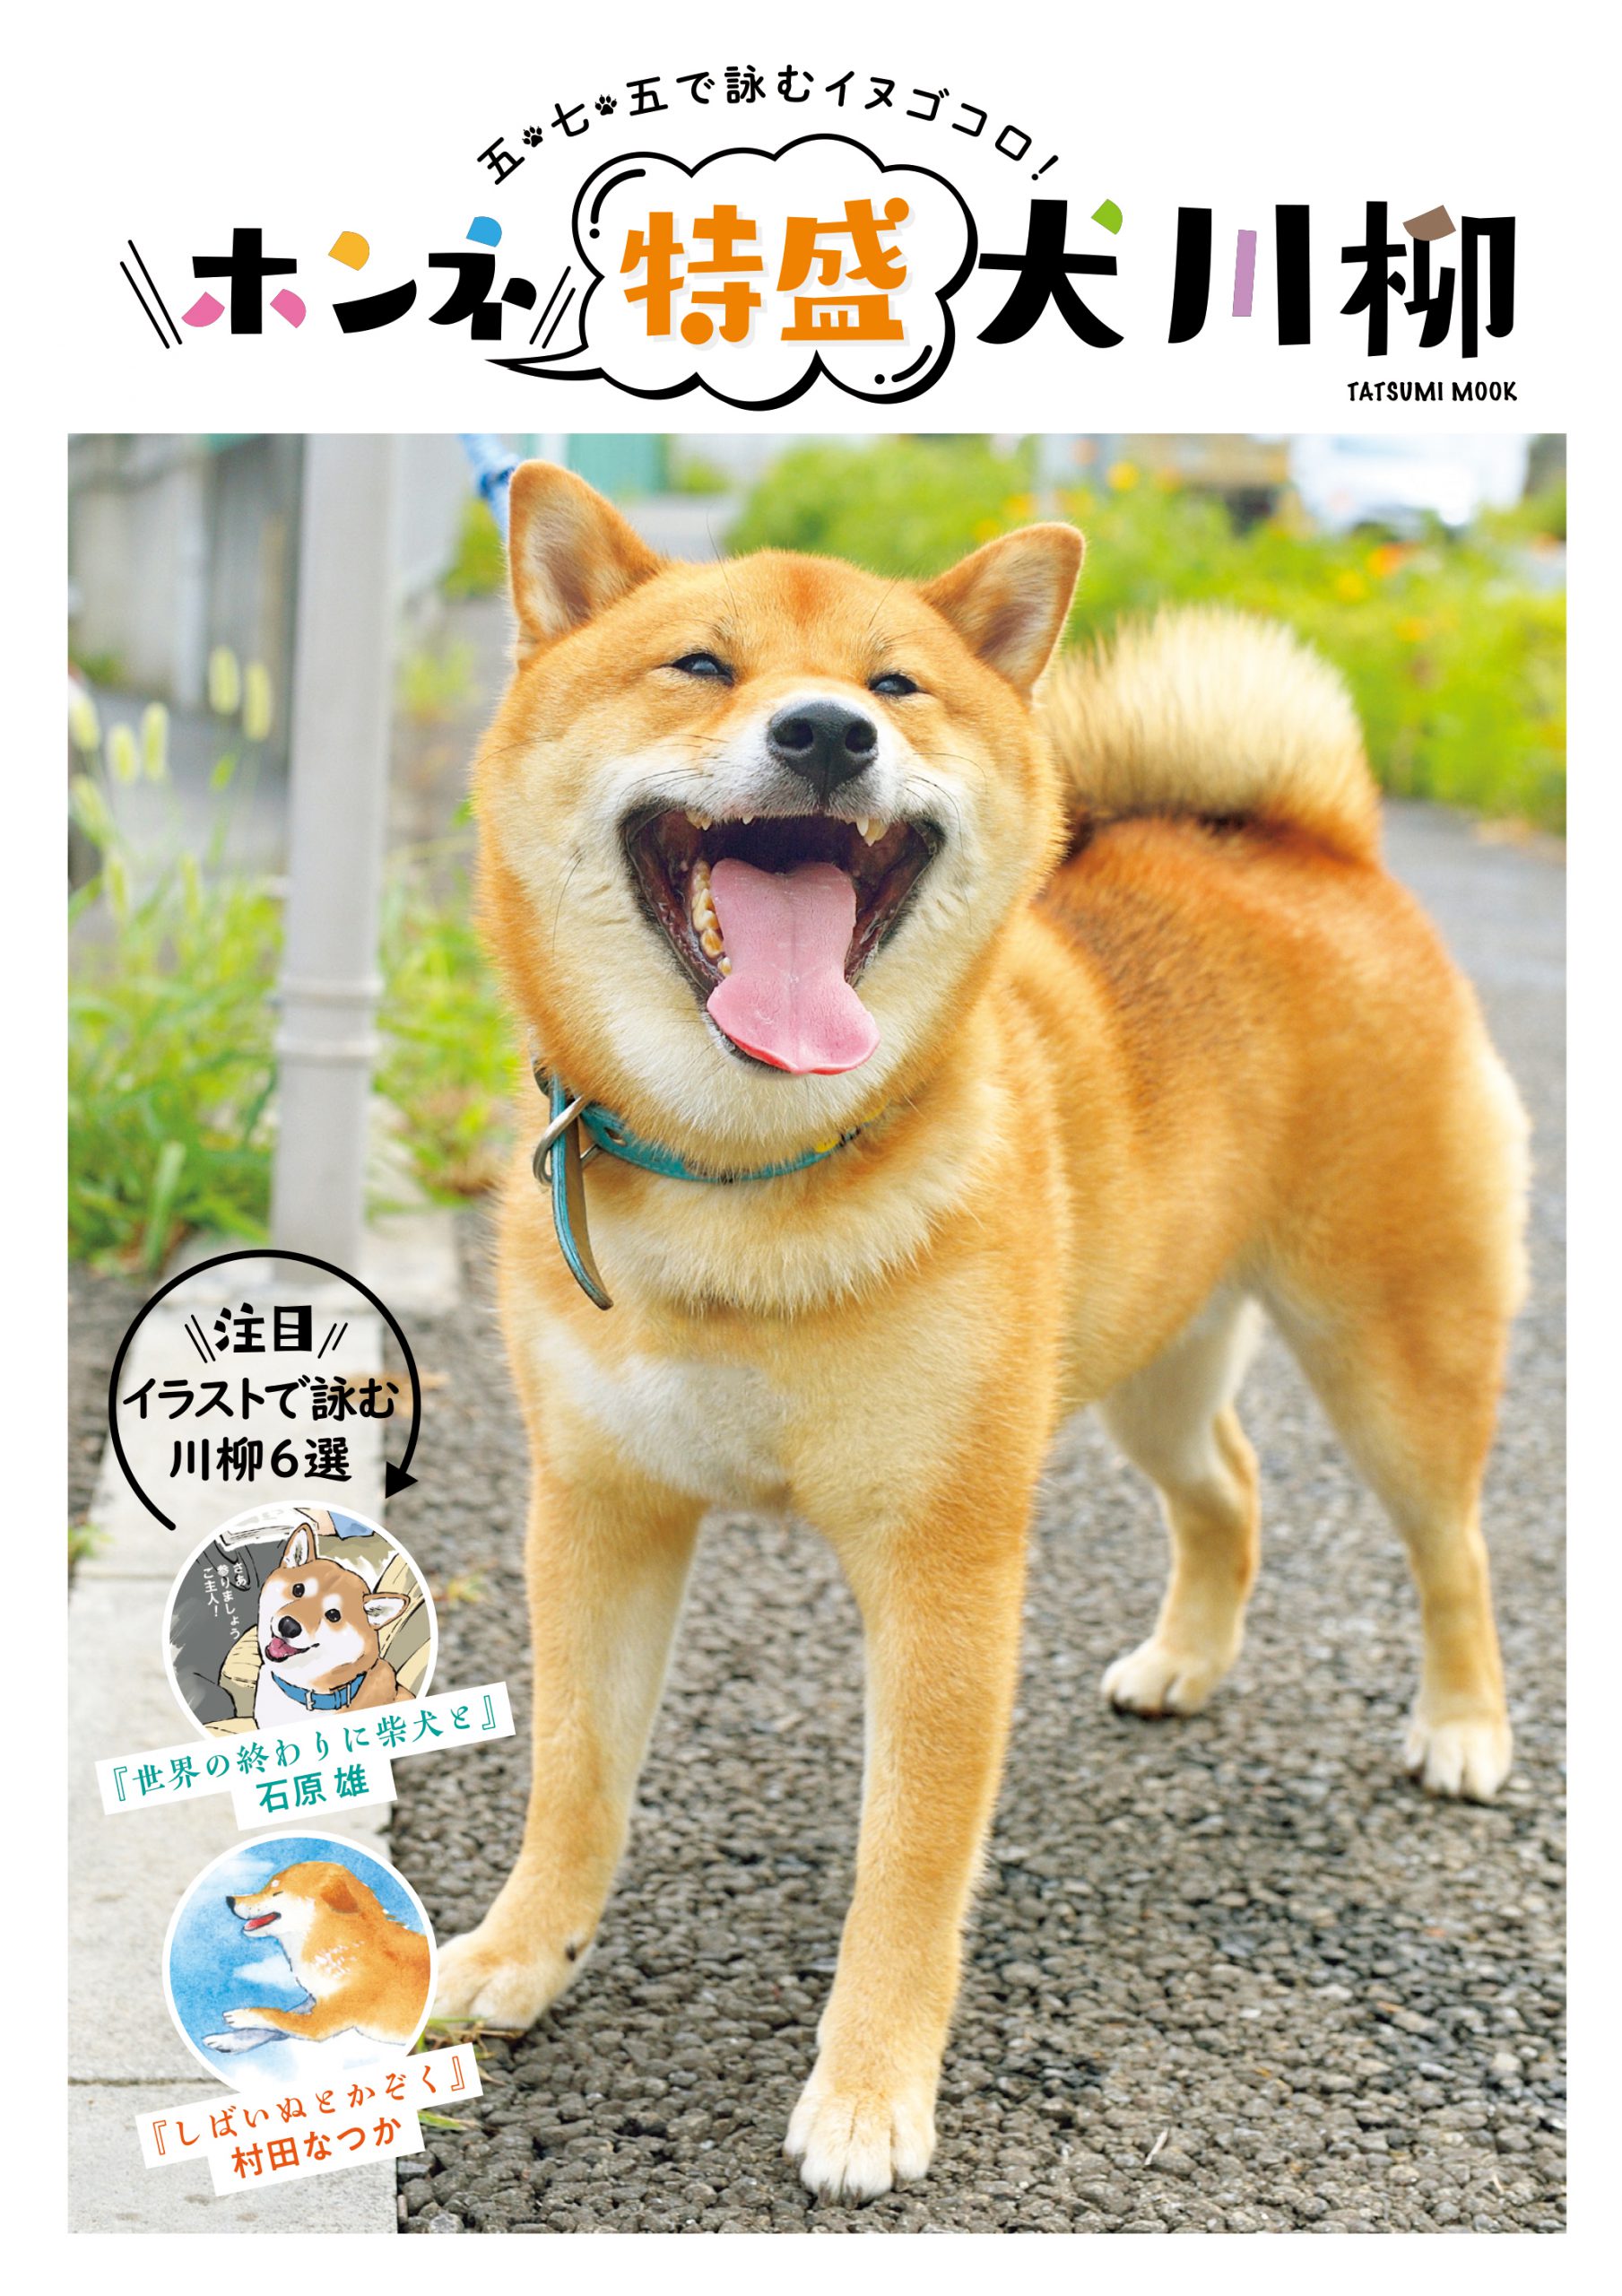 21年も発売 犬川柳 最新刊で川柳募集をスタート Shi Ba シーバ プラス犬びより 犬と楽しく暮らす 情報マガジン